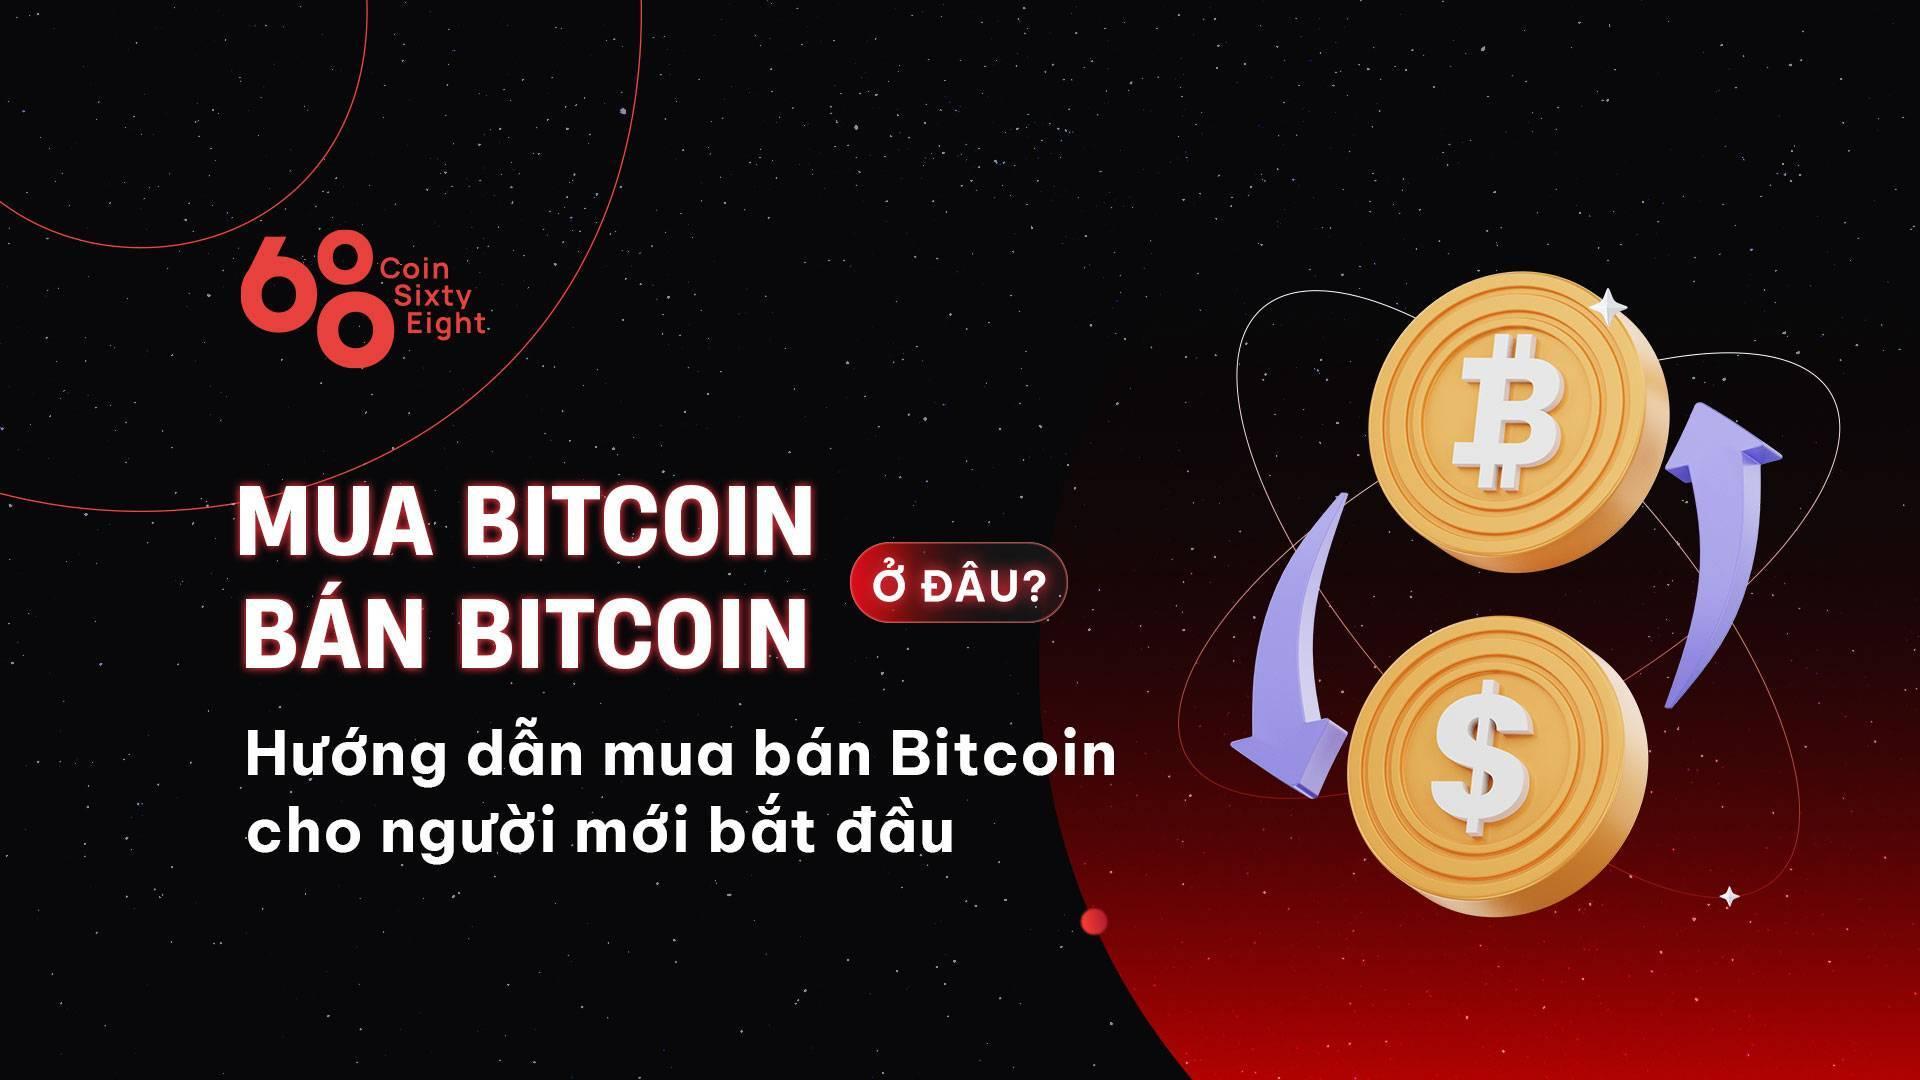 mua-bitcoin-o-dau-ban-bitcoin-o-dau-huong-dan-mua-ban-bitcoin-cho-nguoi-moi-bat-dau